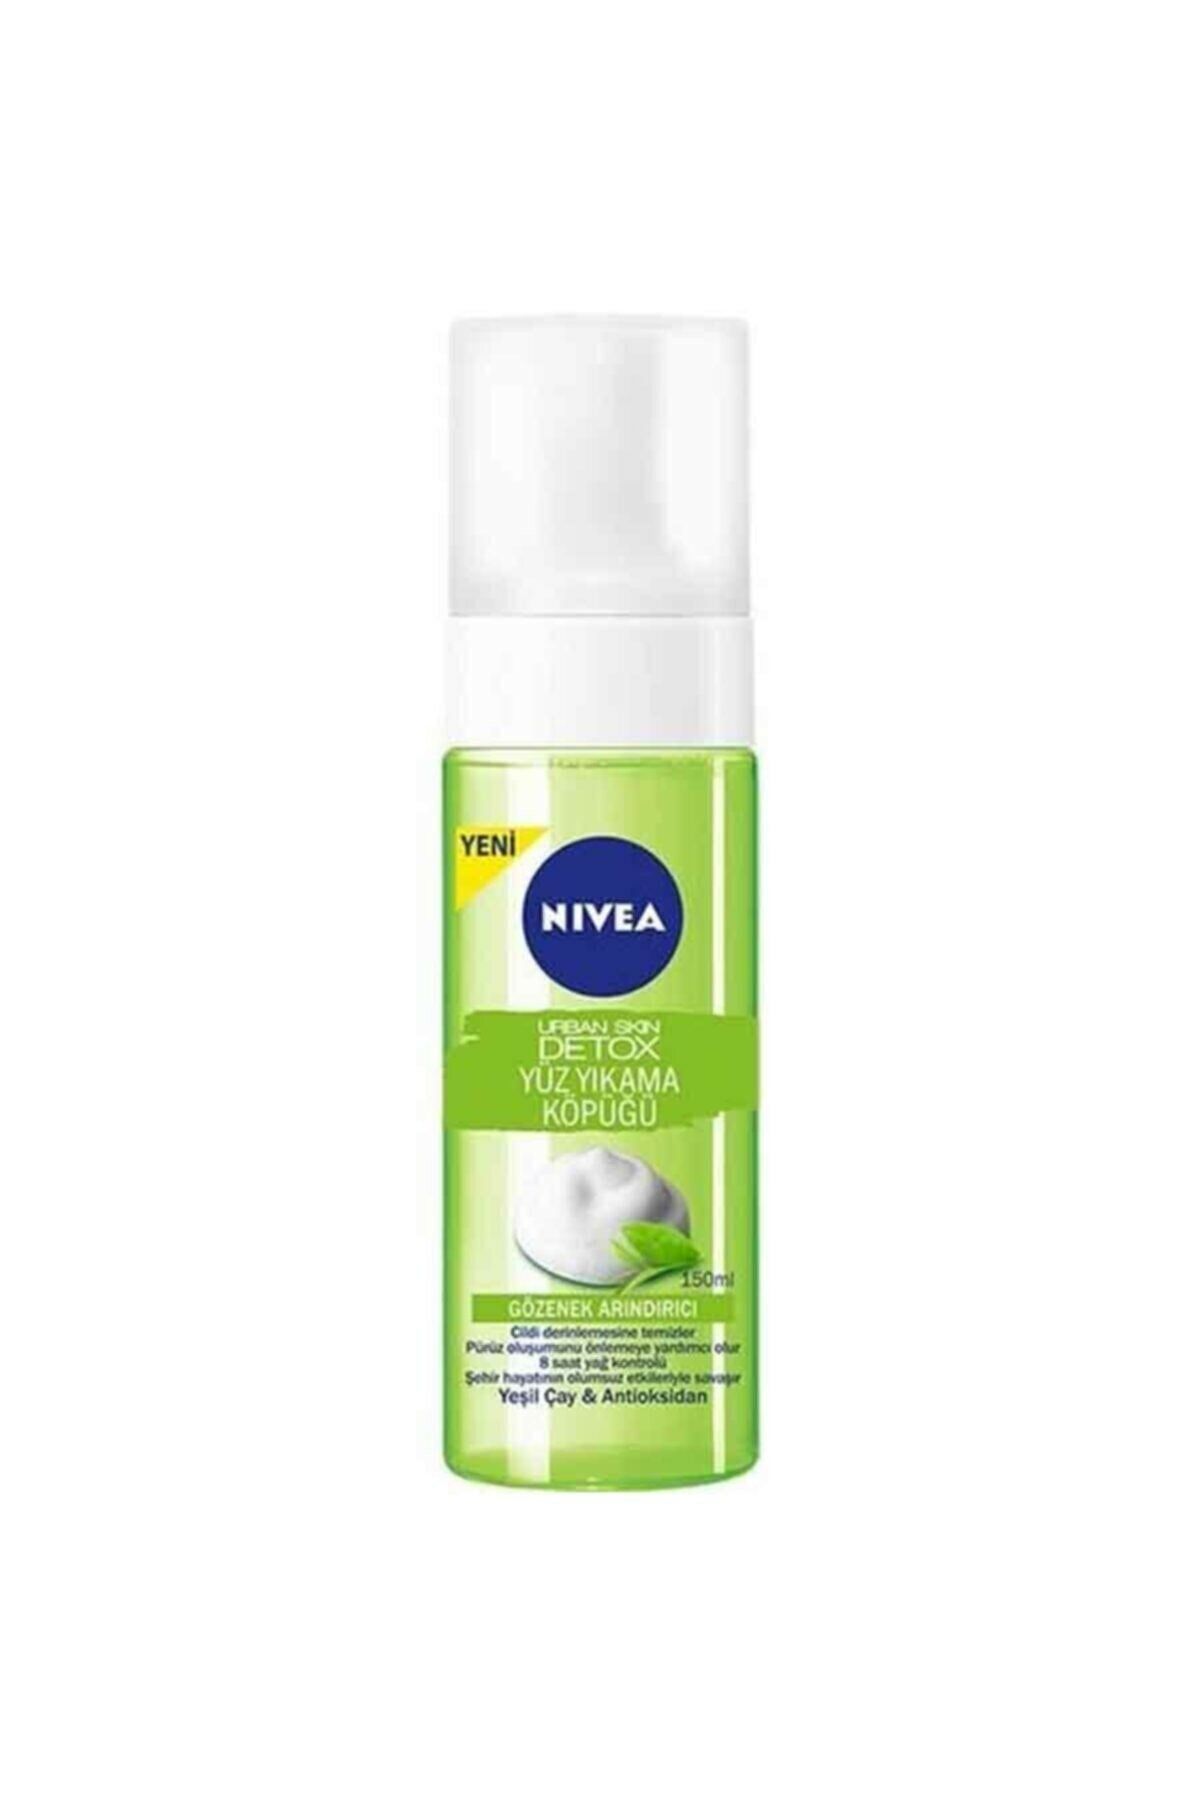 NIVEA Urban Skin Detox Yüz Yıkama Köpüğü 150 ml